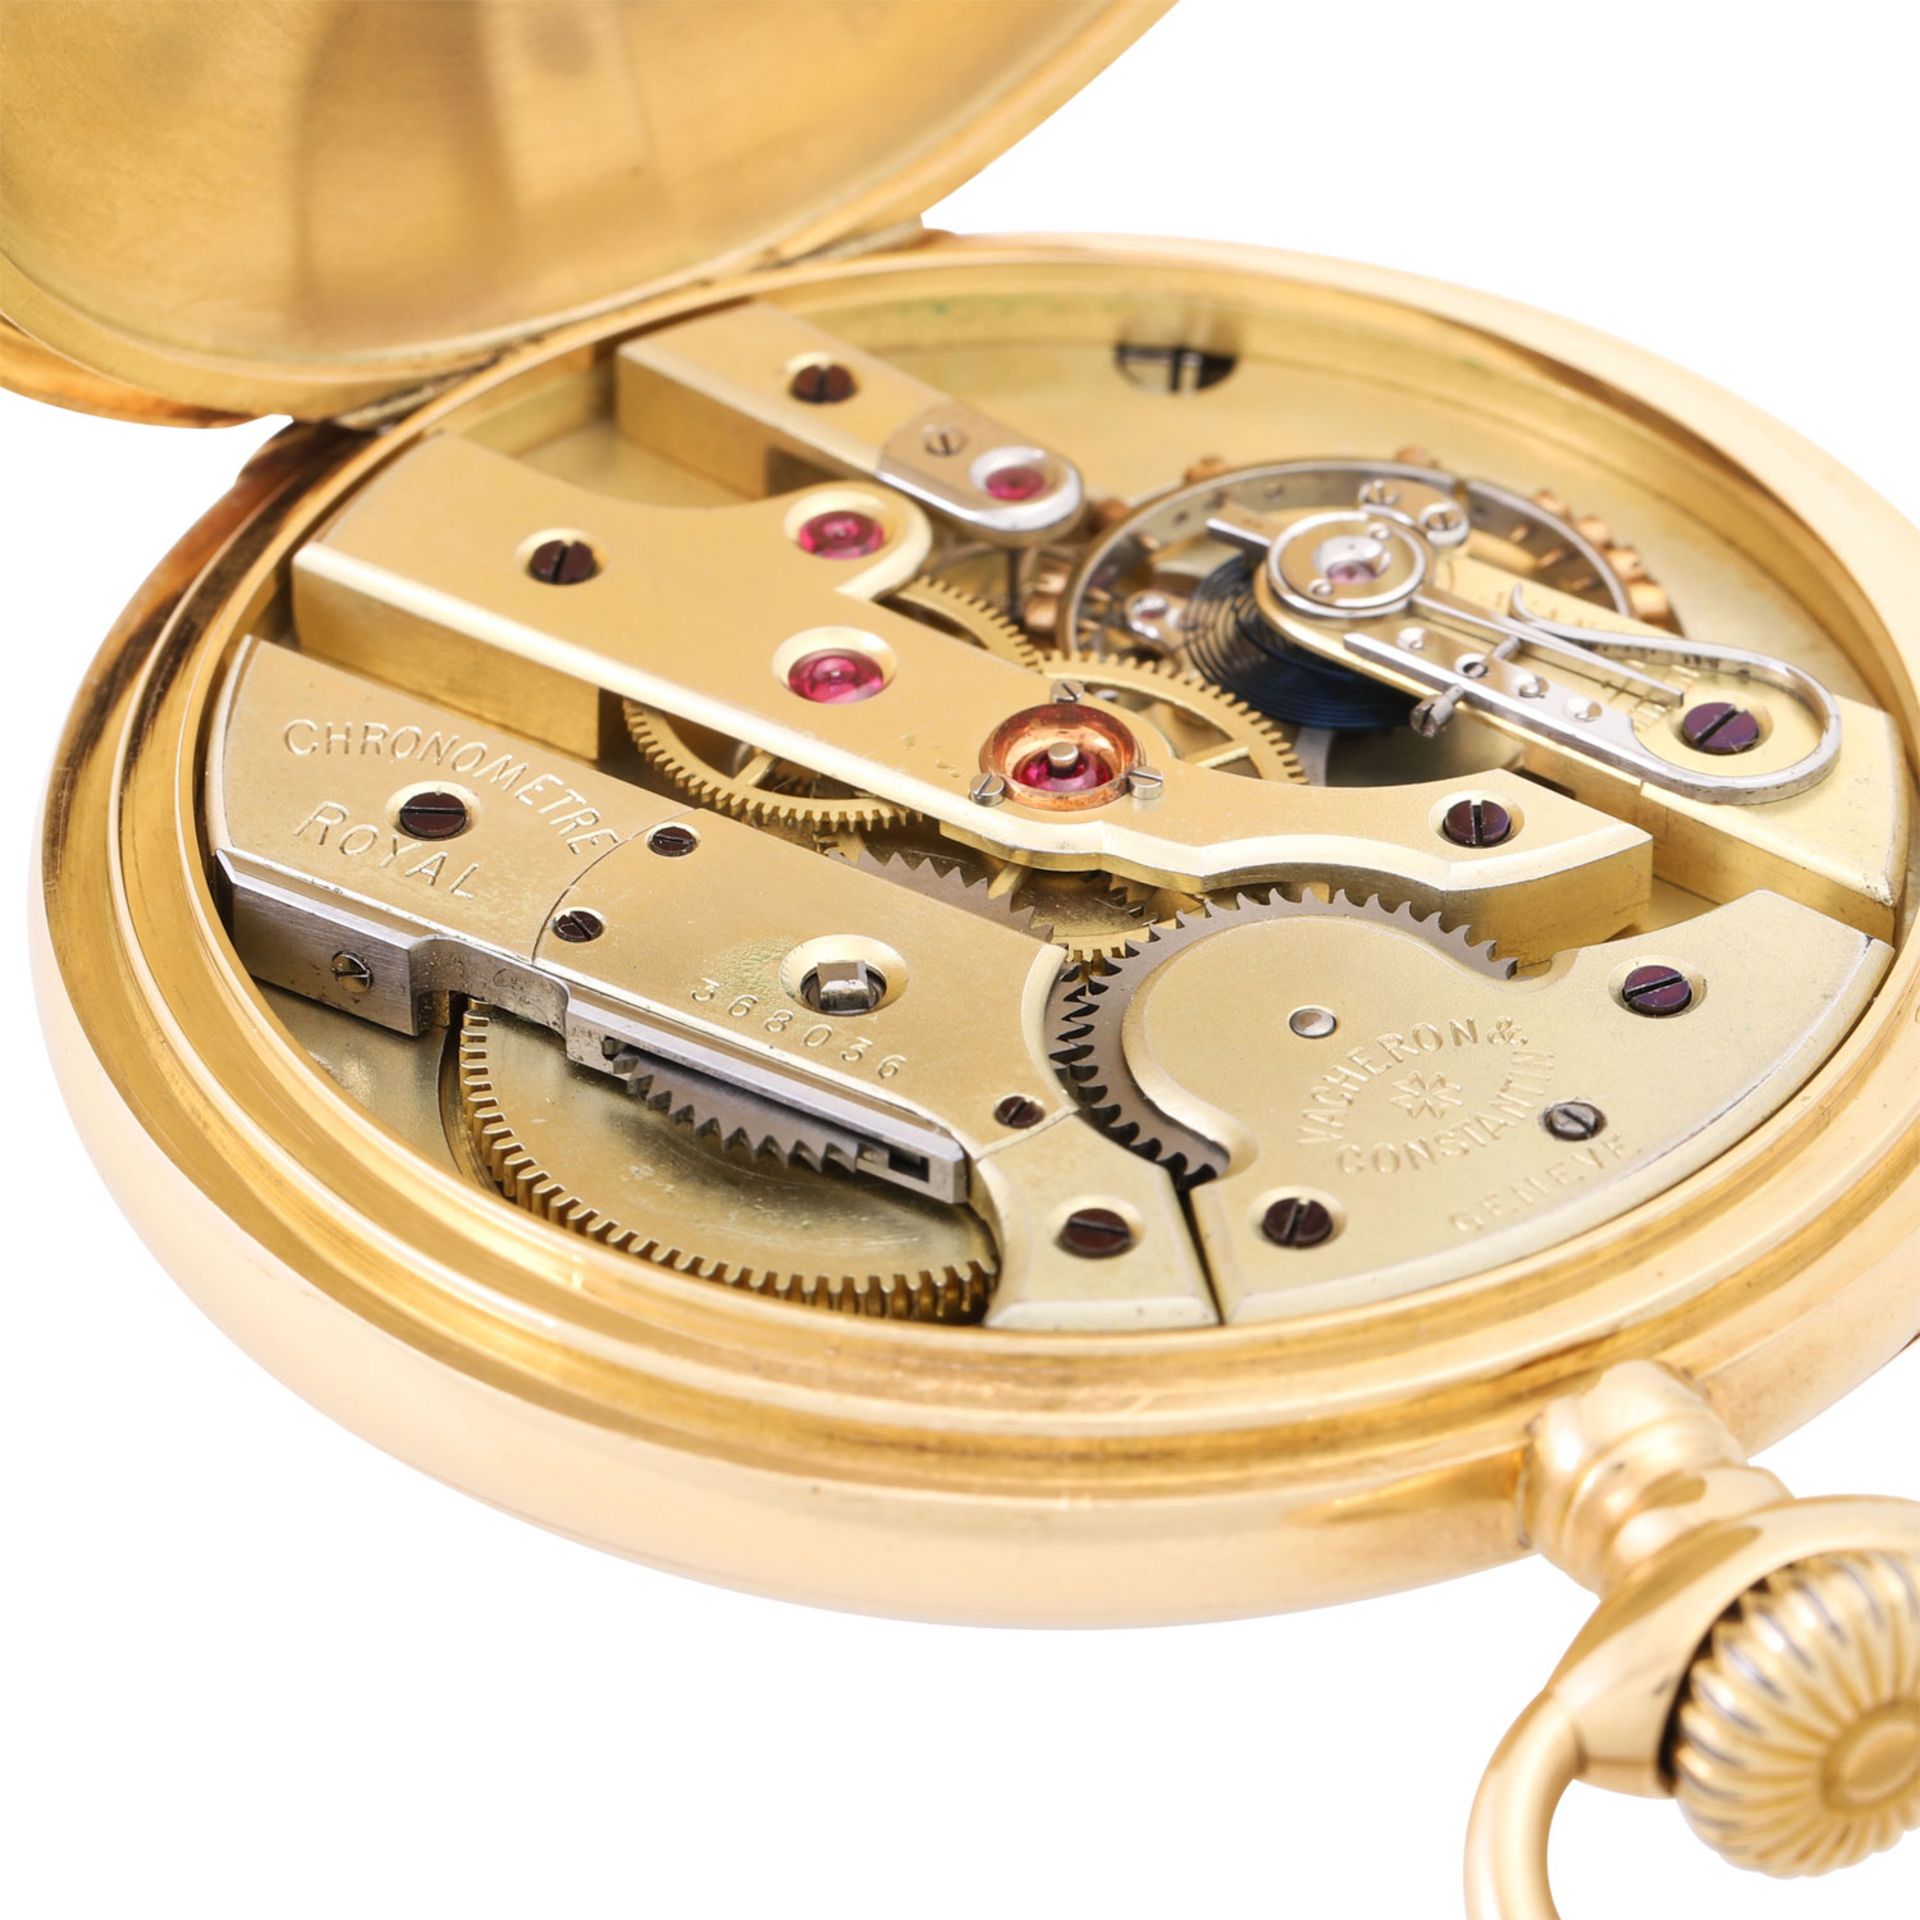 VACHERON CONSTANTIN große, schwere offene Taschenuhr "Chronometre Royal". - Bild 4 aus 9